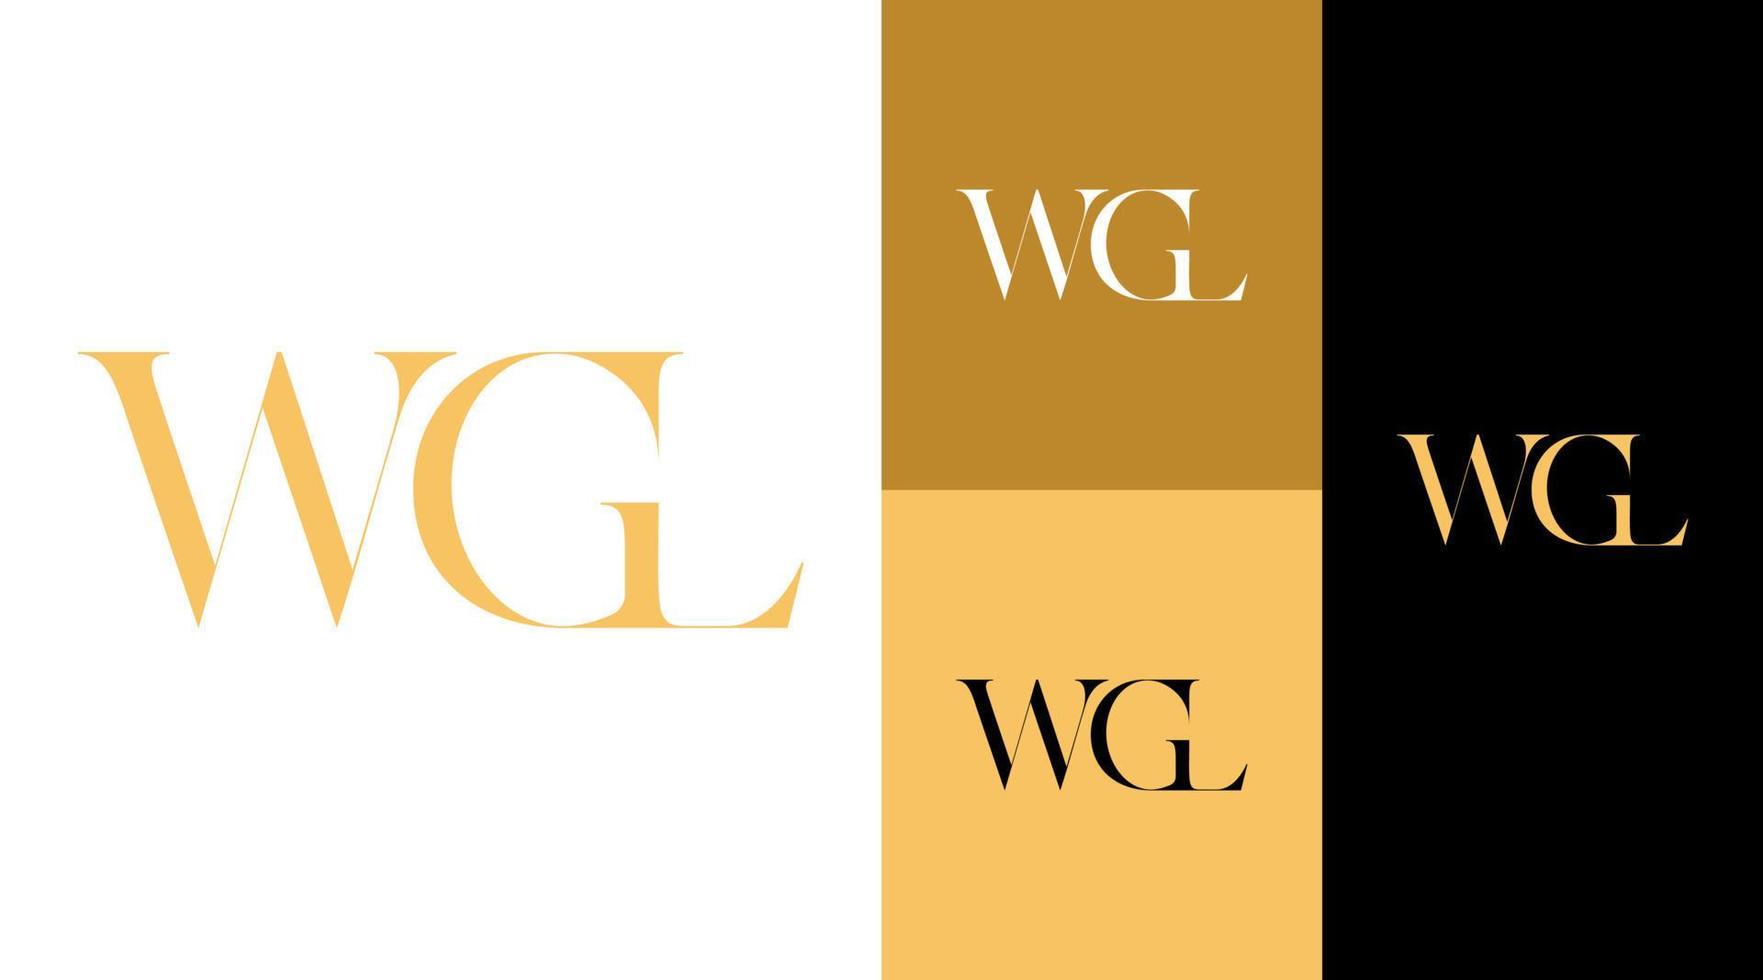 wgl monogram mode kläder företag logotyp designkoncept vektor